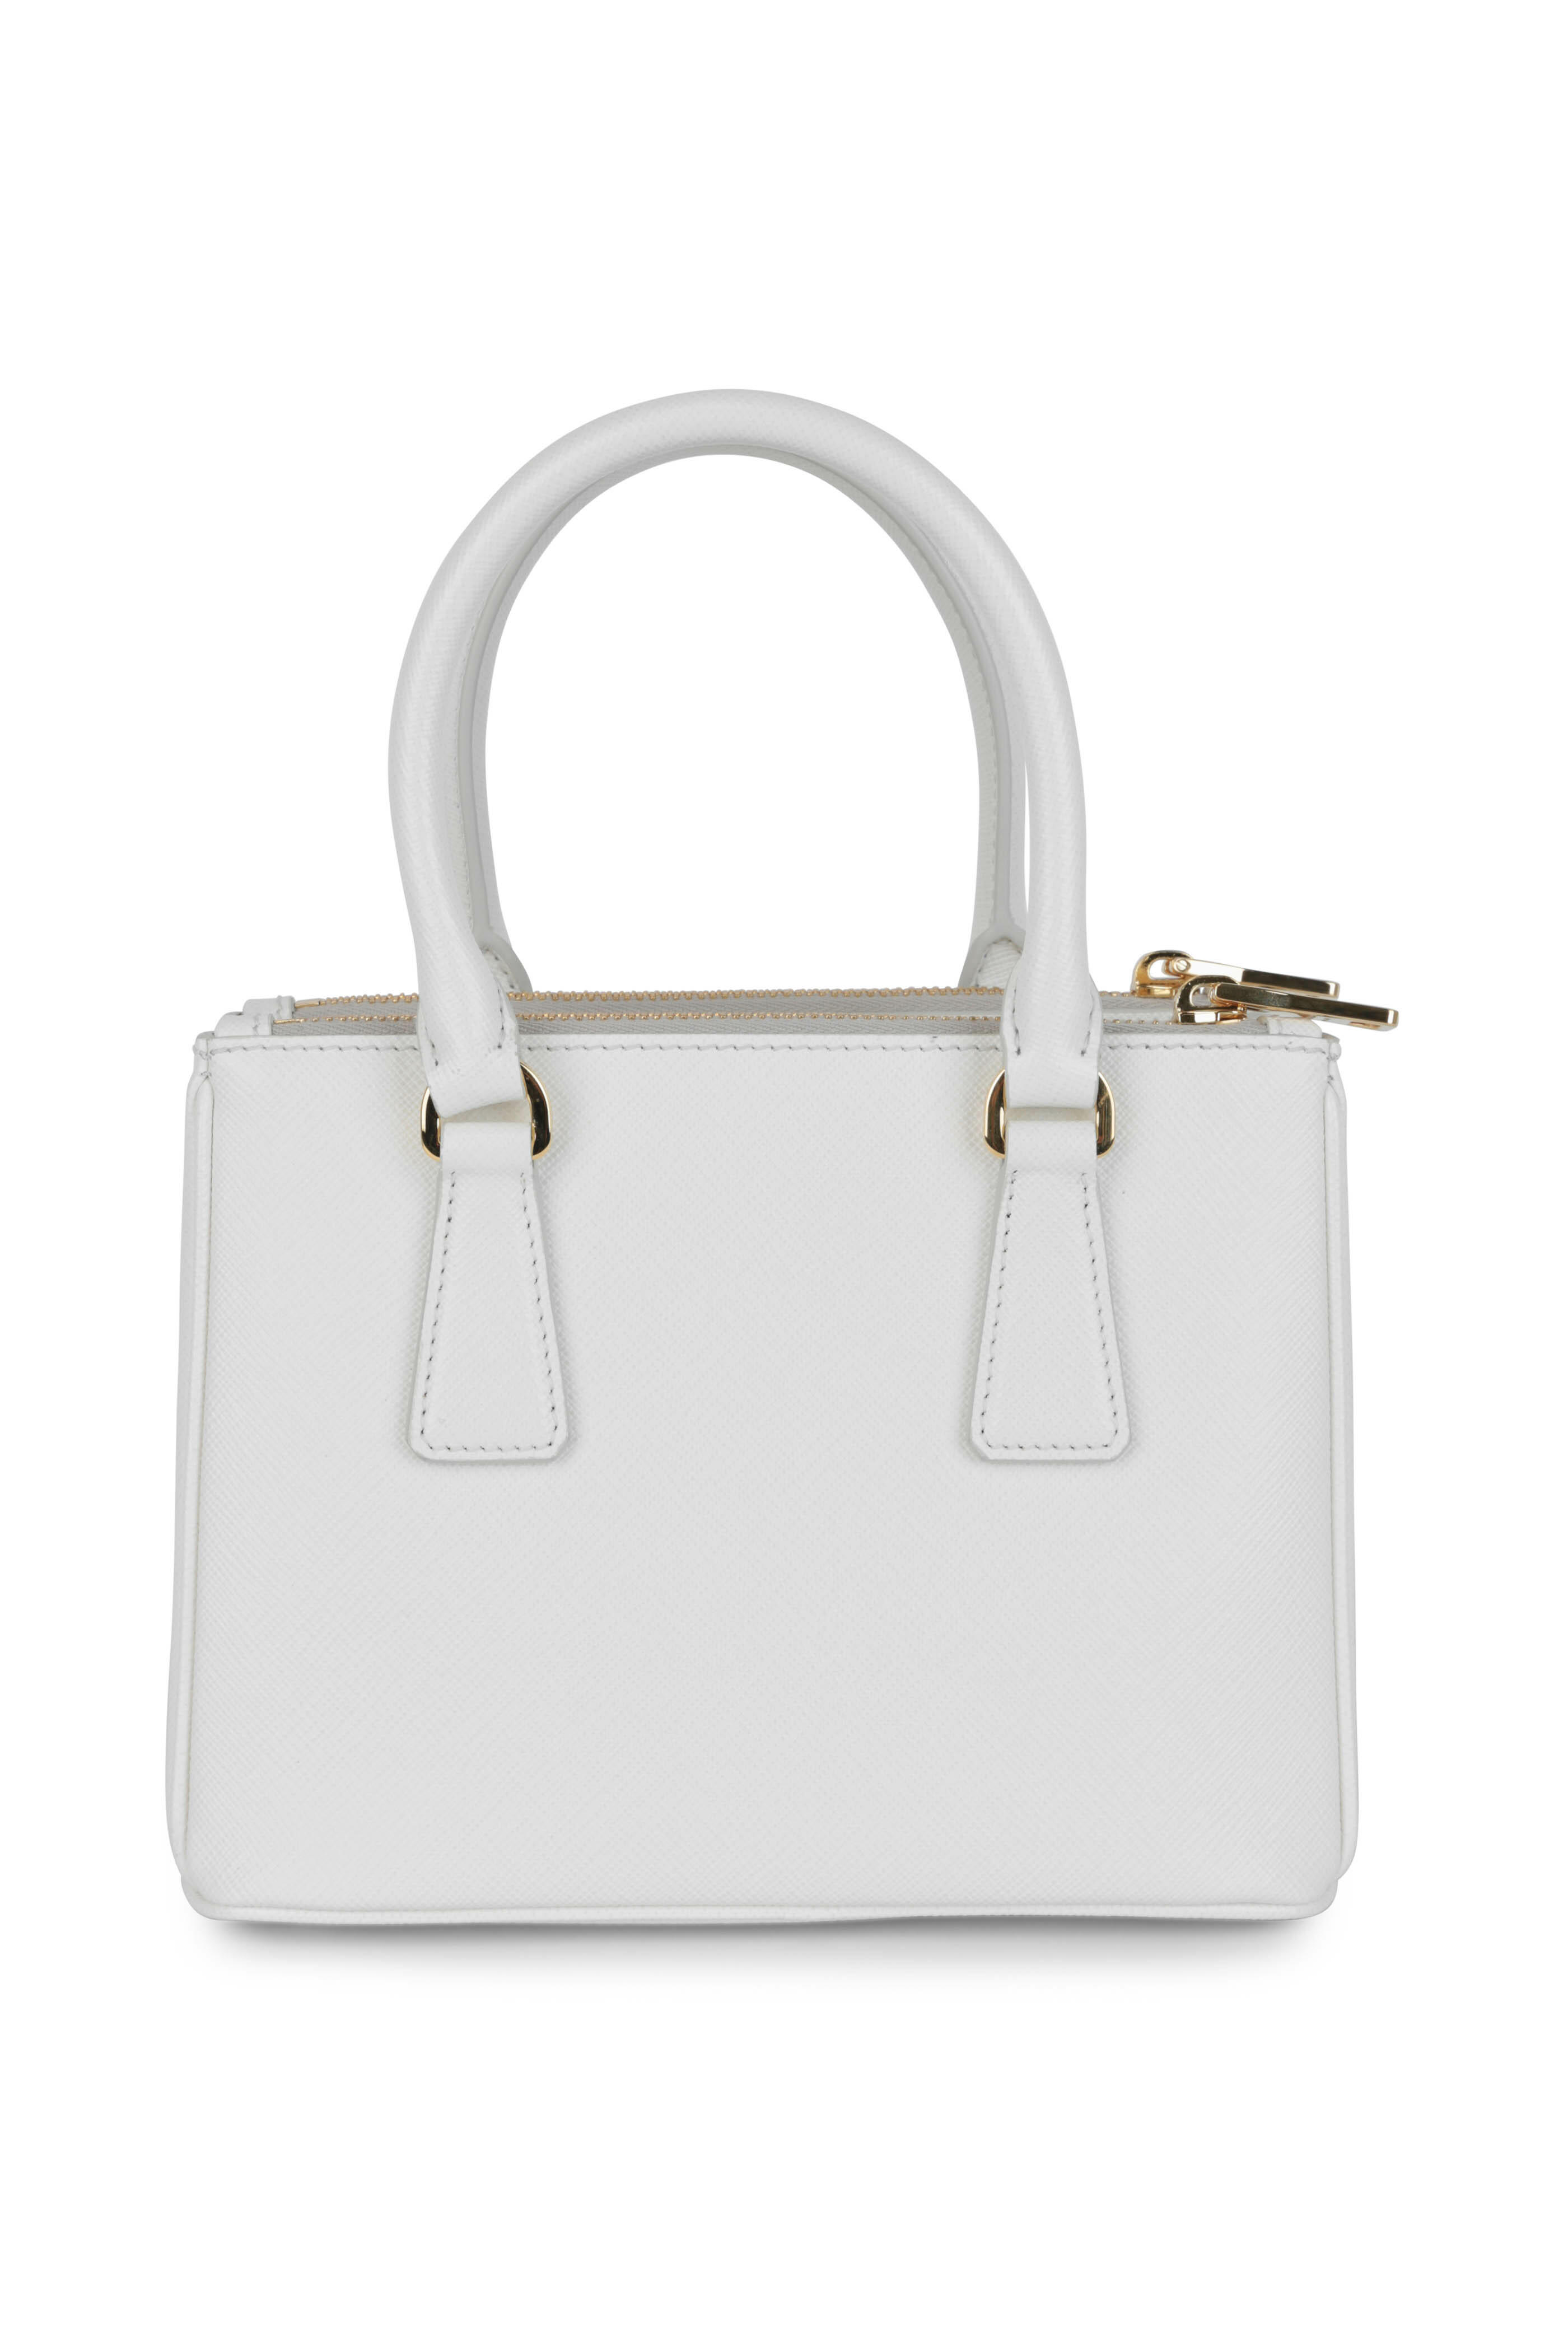 White Prada Monochrome Small Saffiano Bag